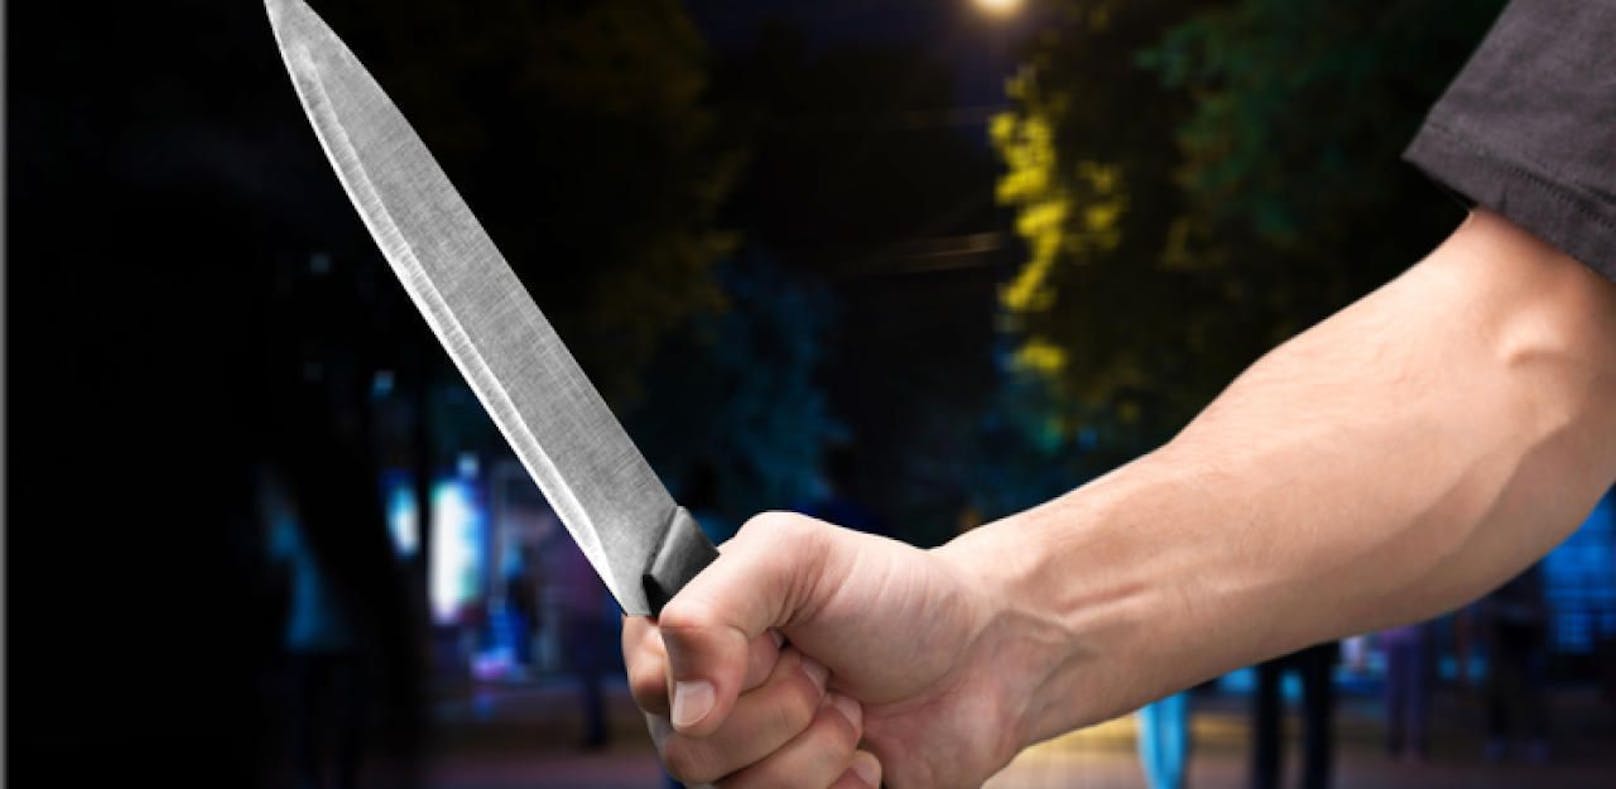 Mann (20) attackierte Ehefrau (37) mit Messer